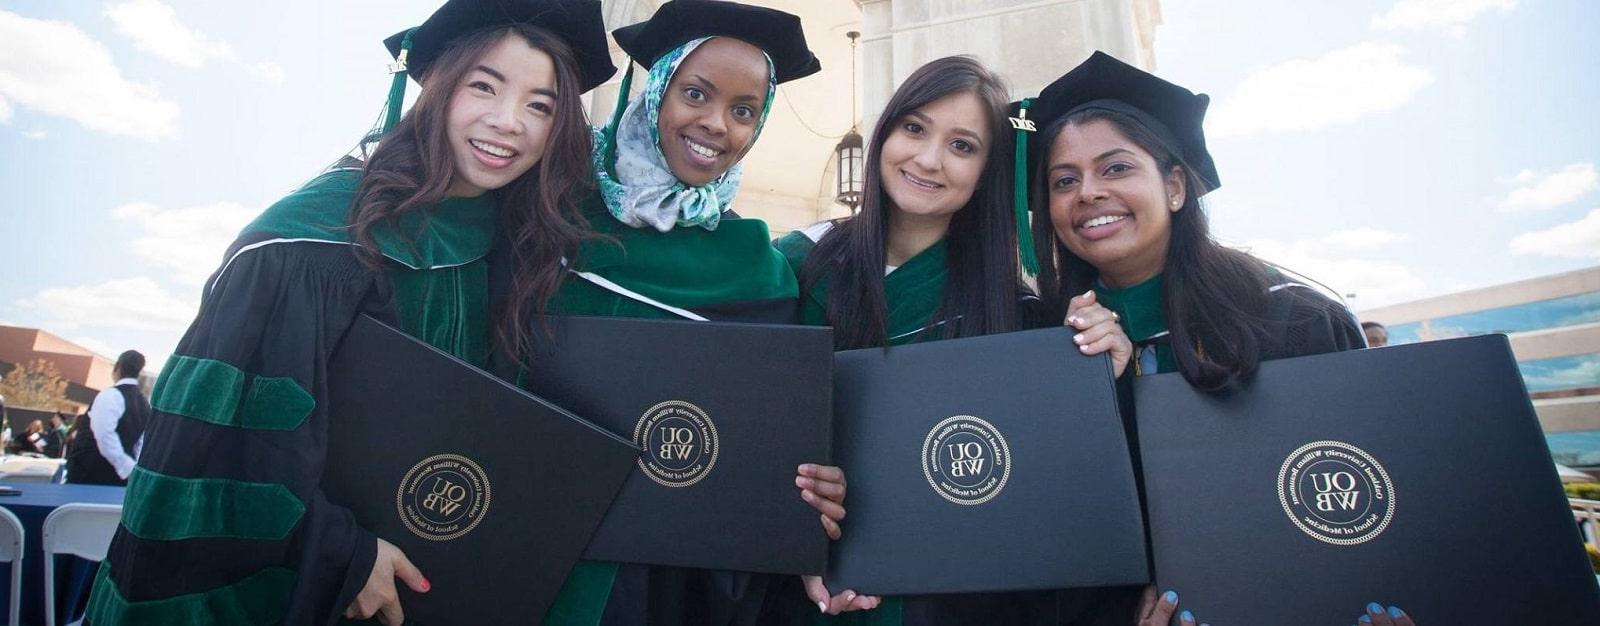 四名应届毕业生戴着帽子，身穿长袍，手持毕业证书站在艾略特塔前.